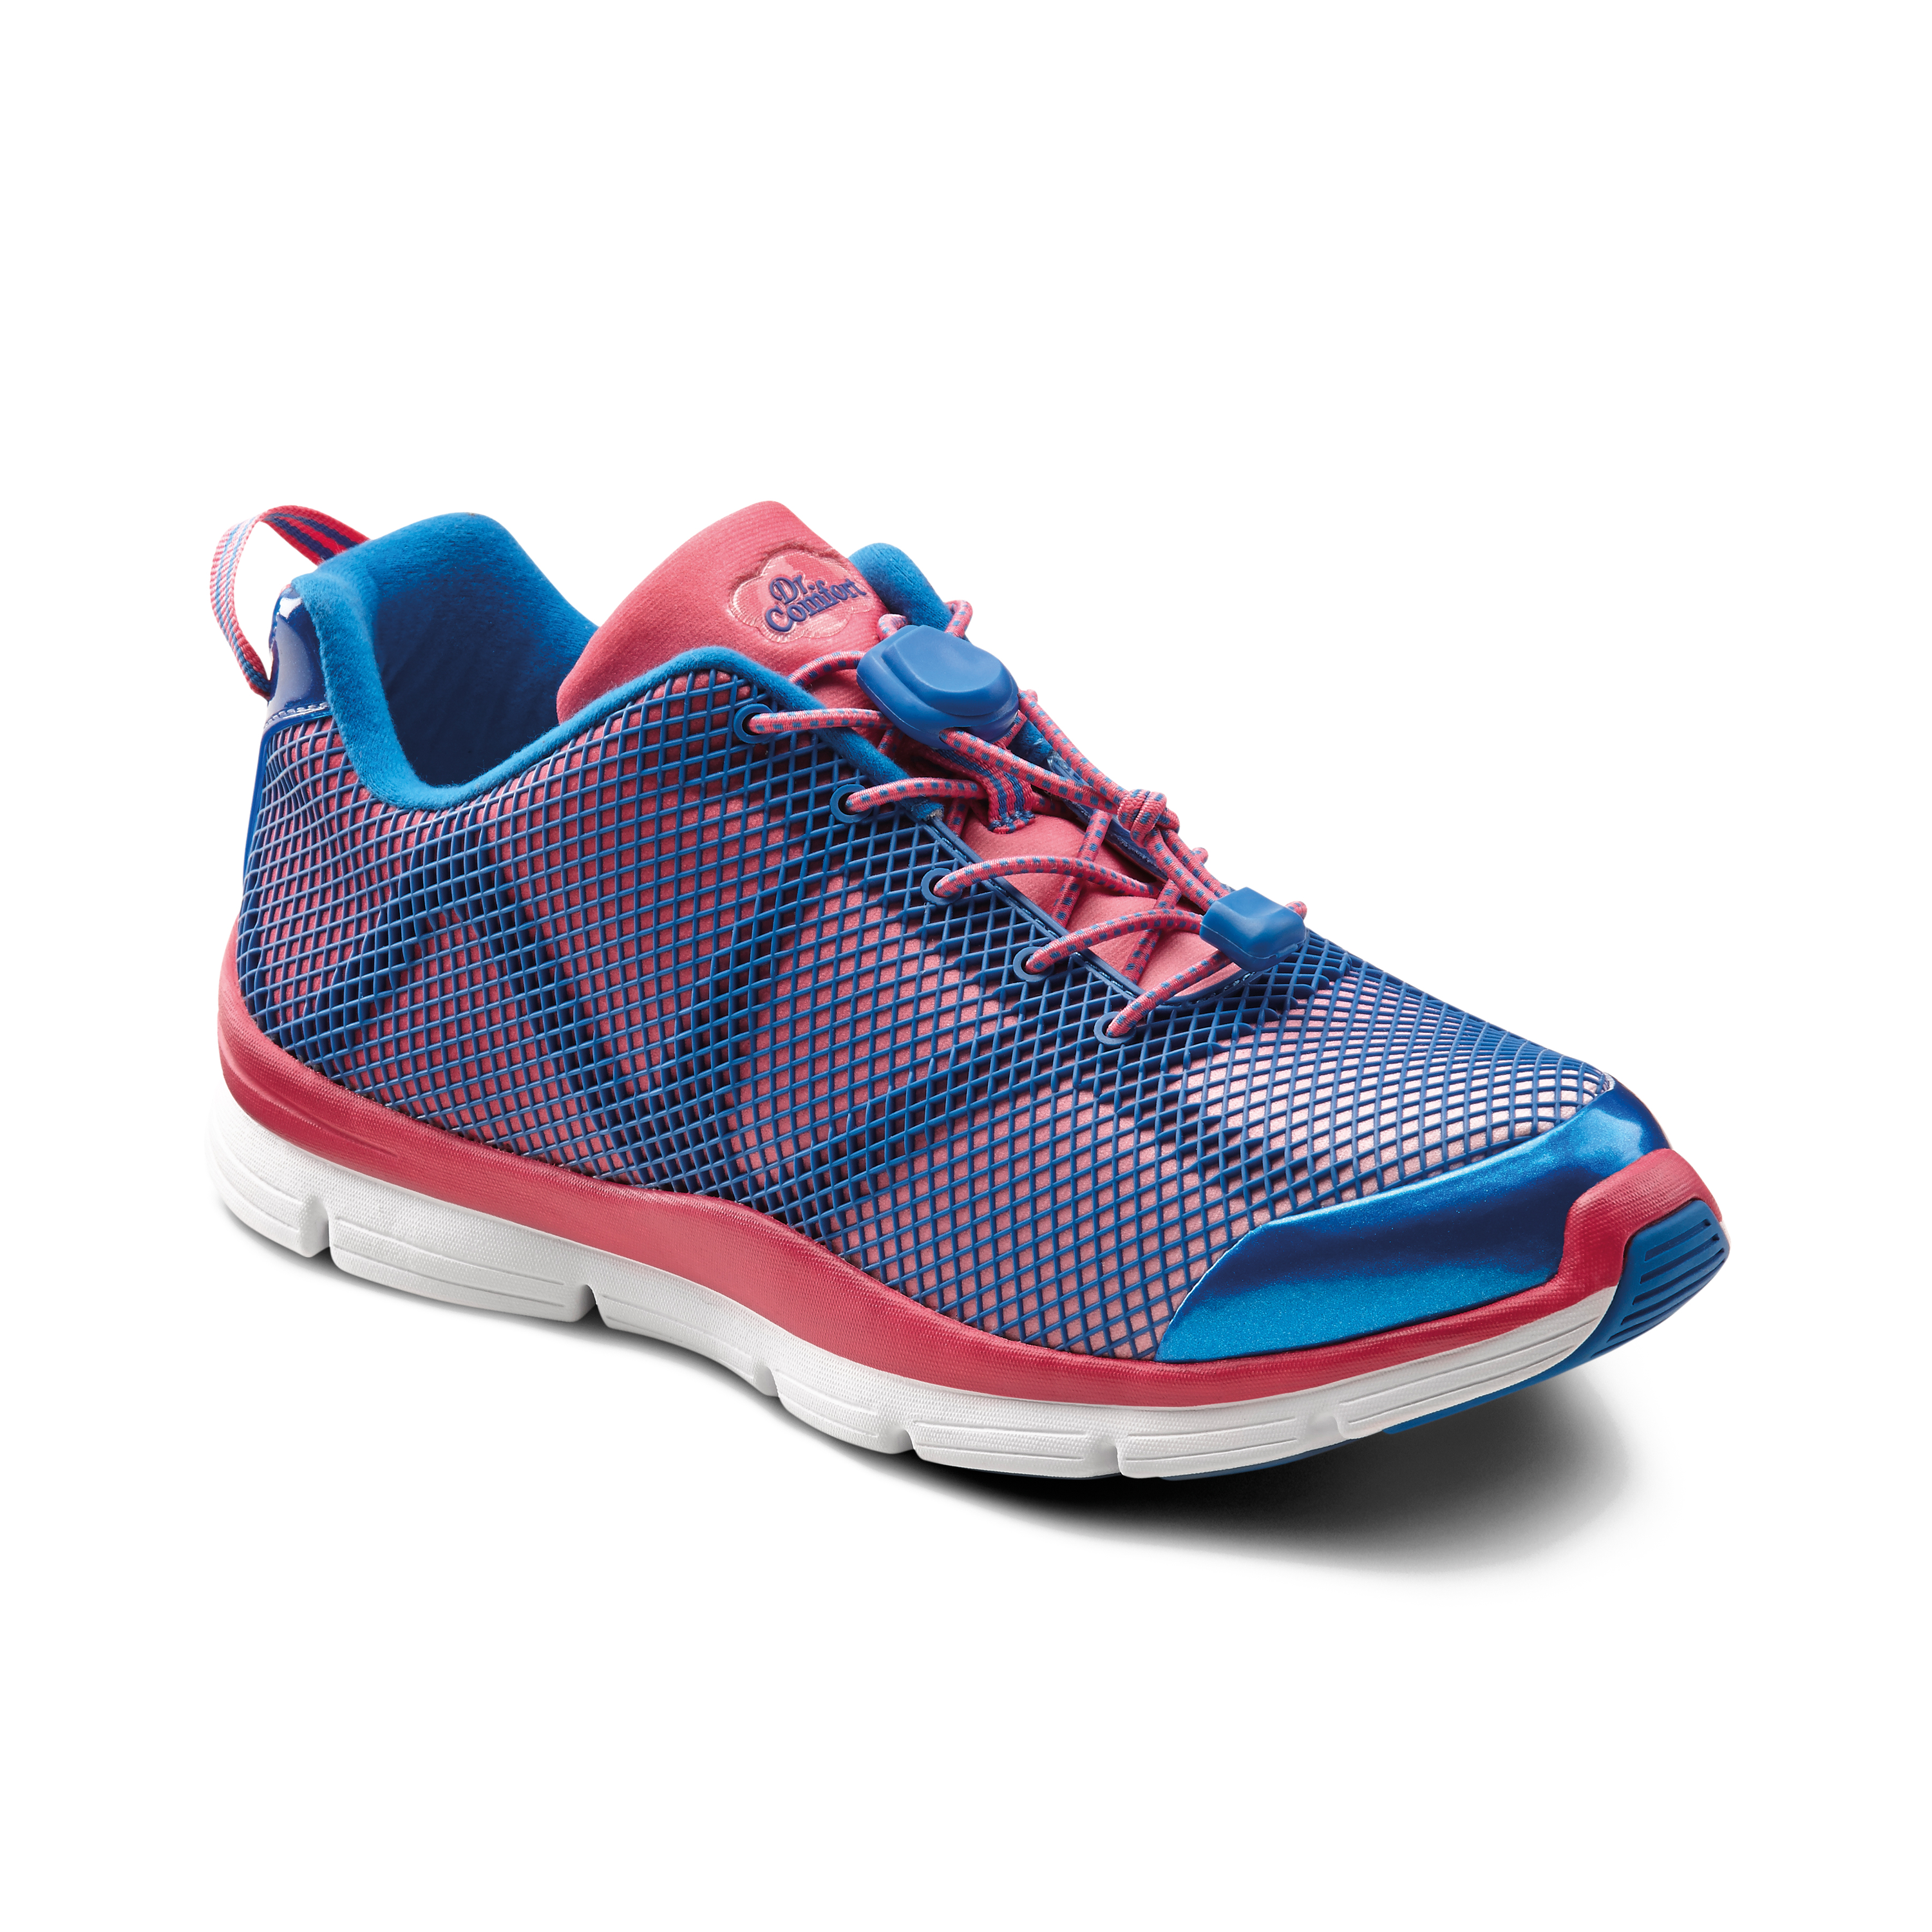 Produktbild DR. COMFORT® Katy pink, Orthopädische Schuhe, Besonders weicher und leichter Freizeit- und Aktivschuh